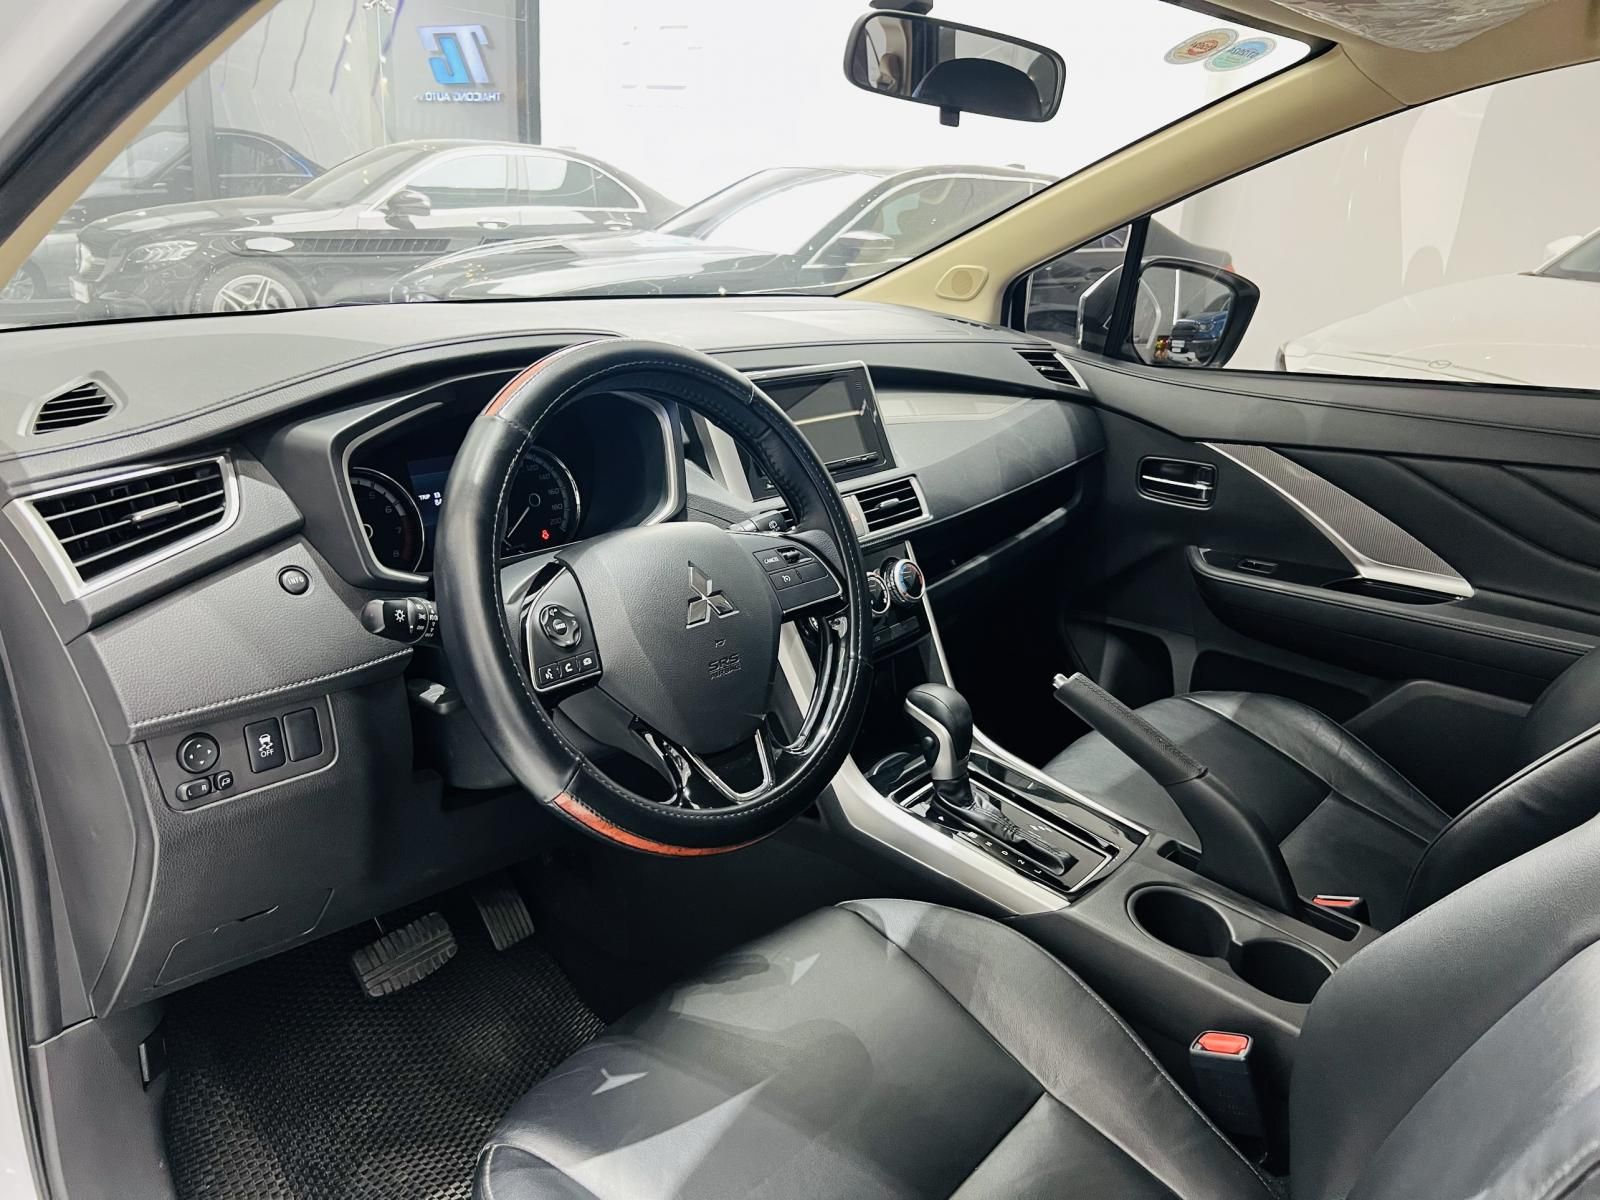 Mitsubishi Xpander 2021 - Giá tốt, hổ trợ vay đến 70% giá trị xe